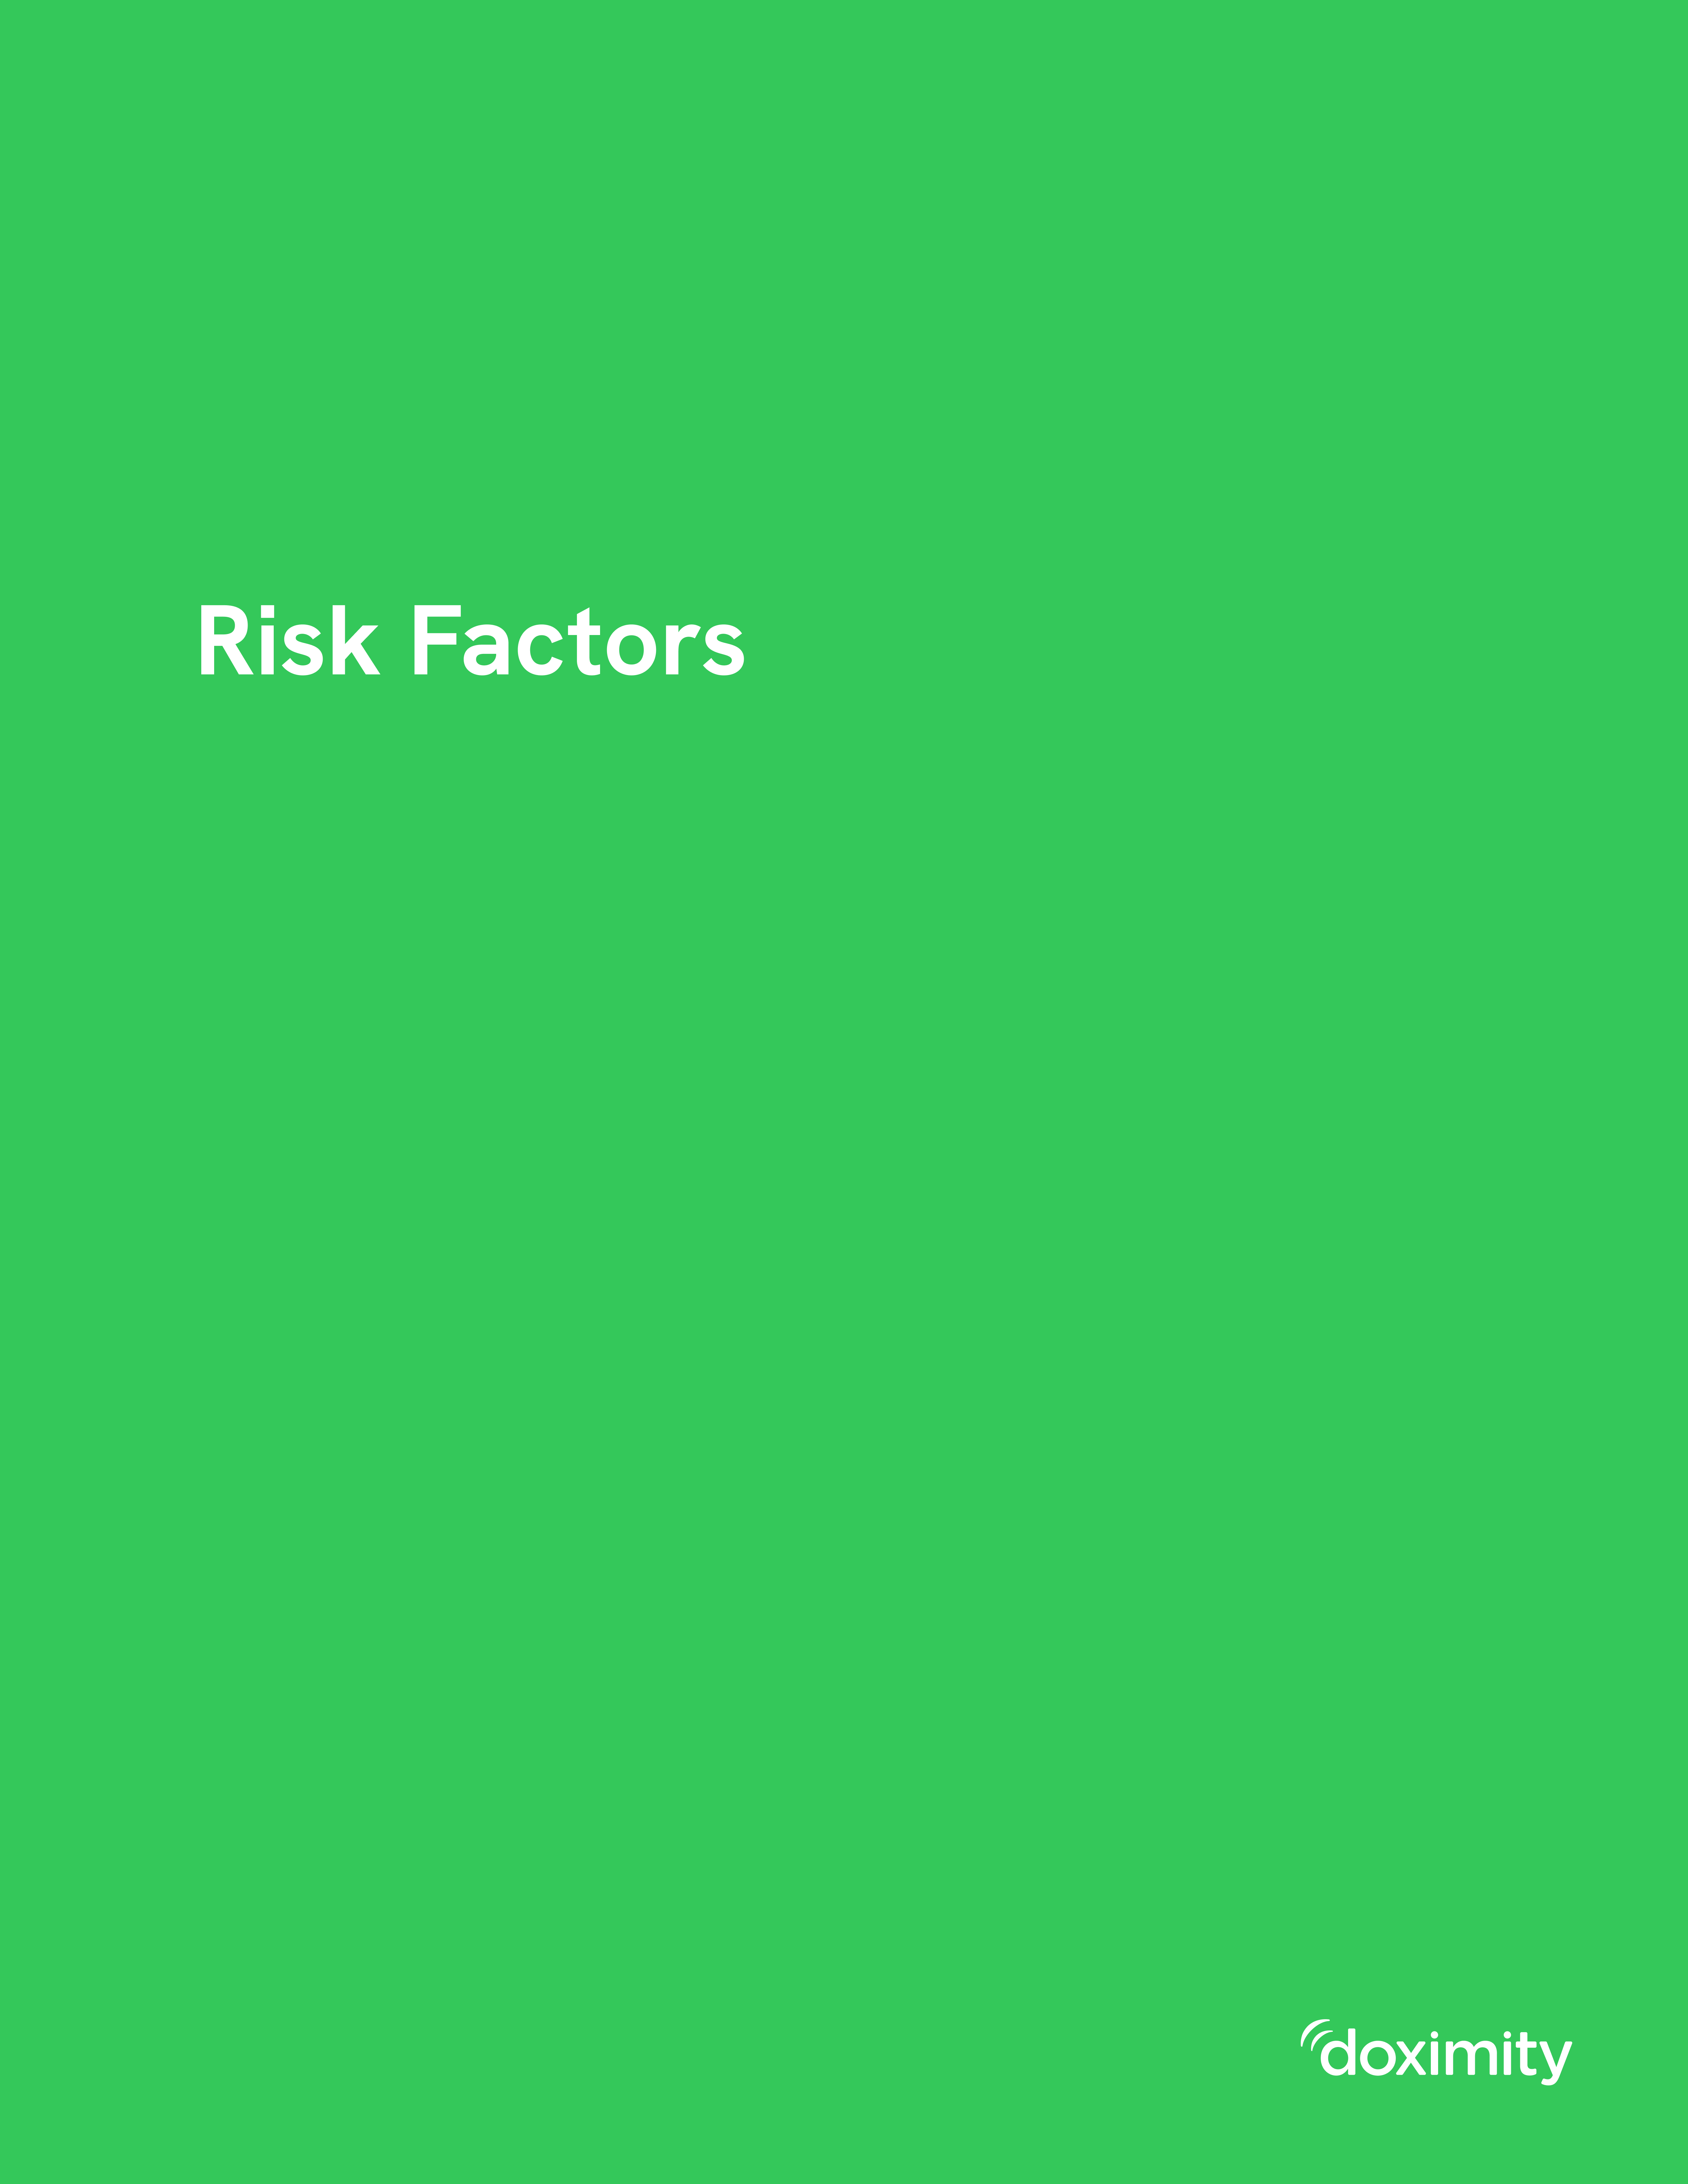 riskfactors1a.jpg